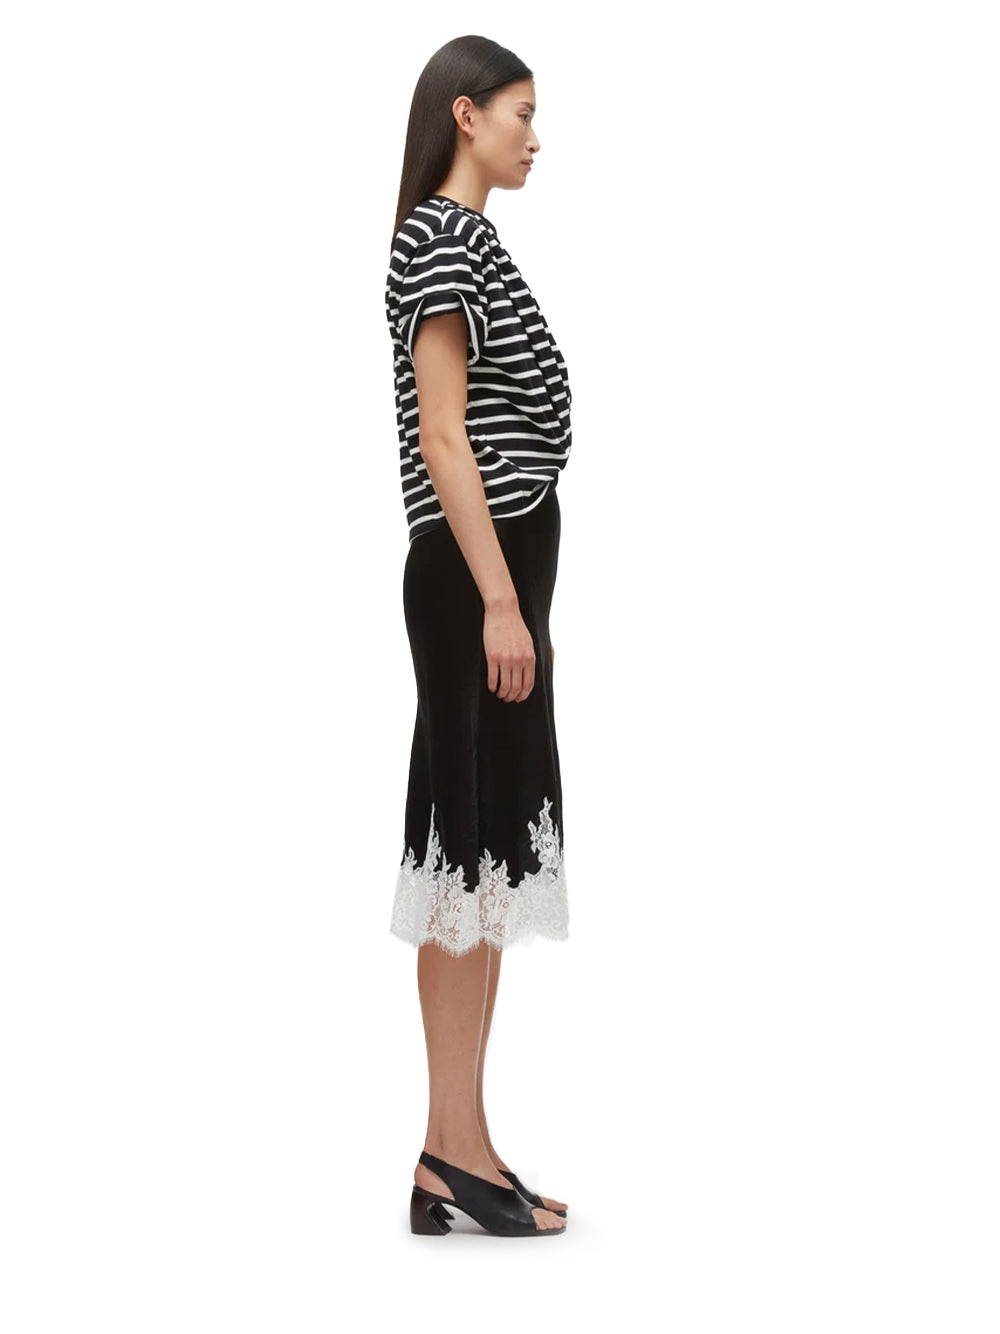 Striped Draped T-Shirt Slip Combo Dress (BLK Multi Striped)